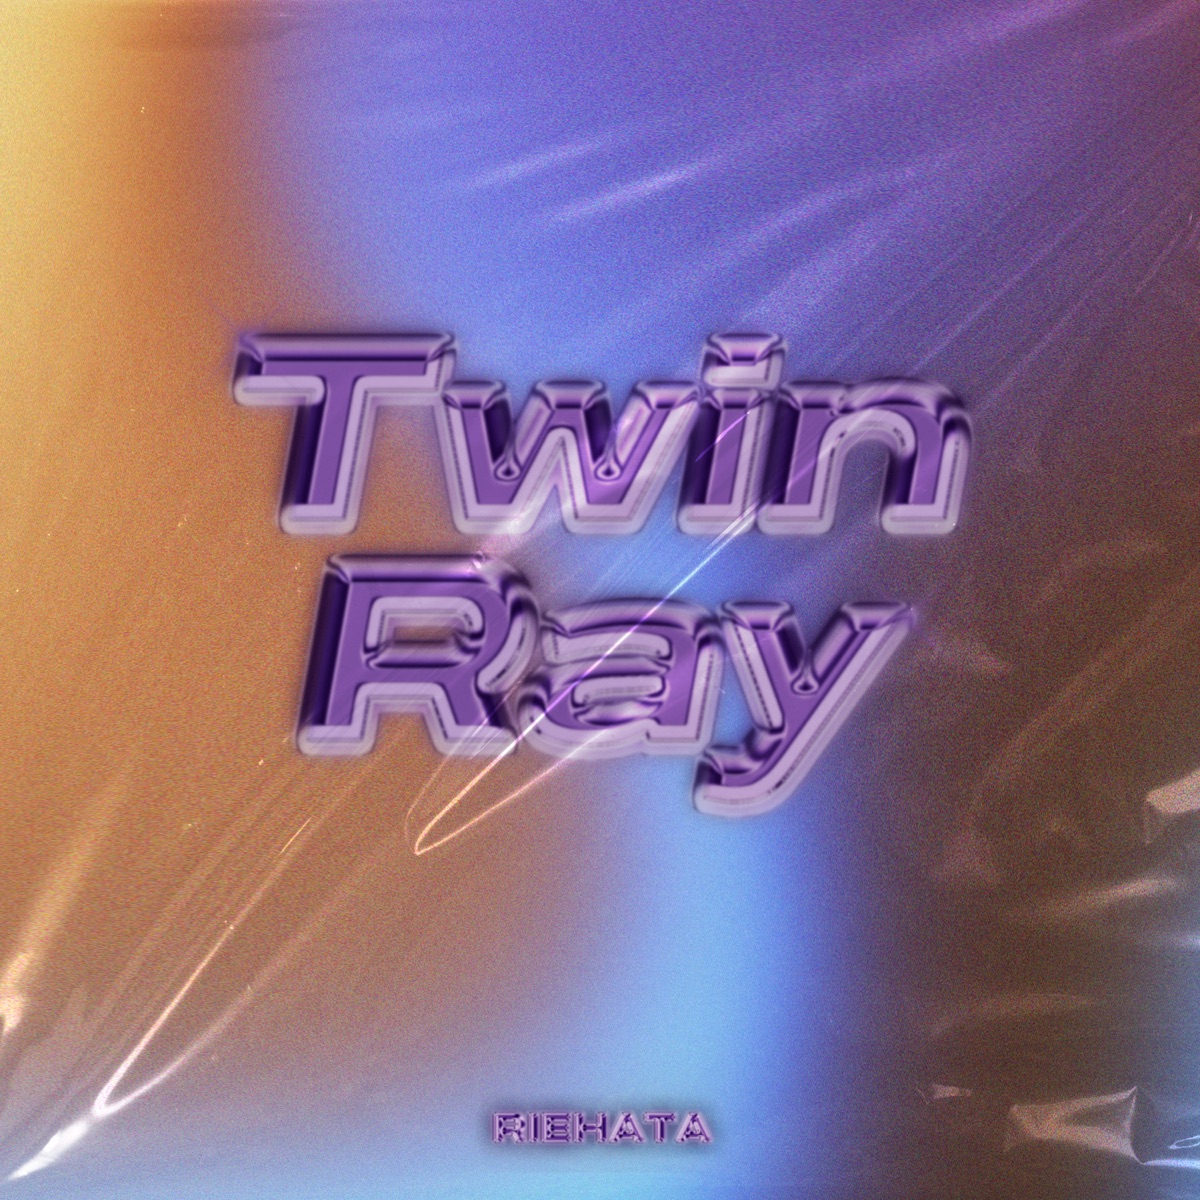 『RIEHATA - Twin Ray』収録の『Twin Ray』ジャケット